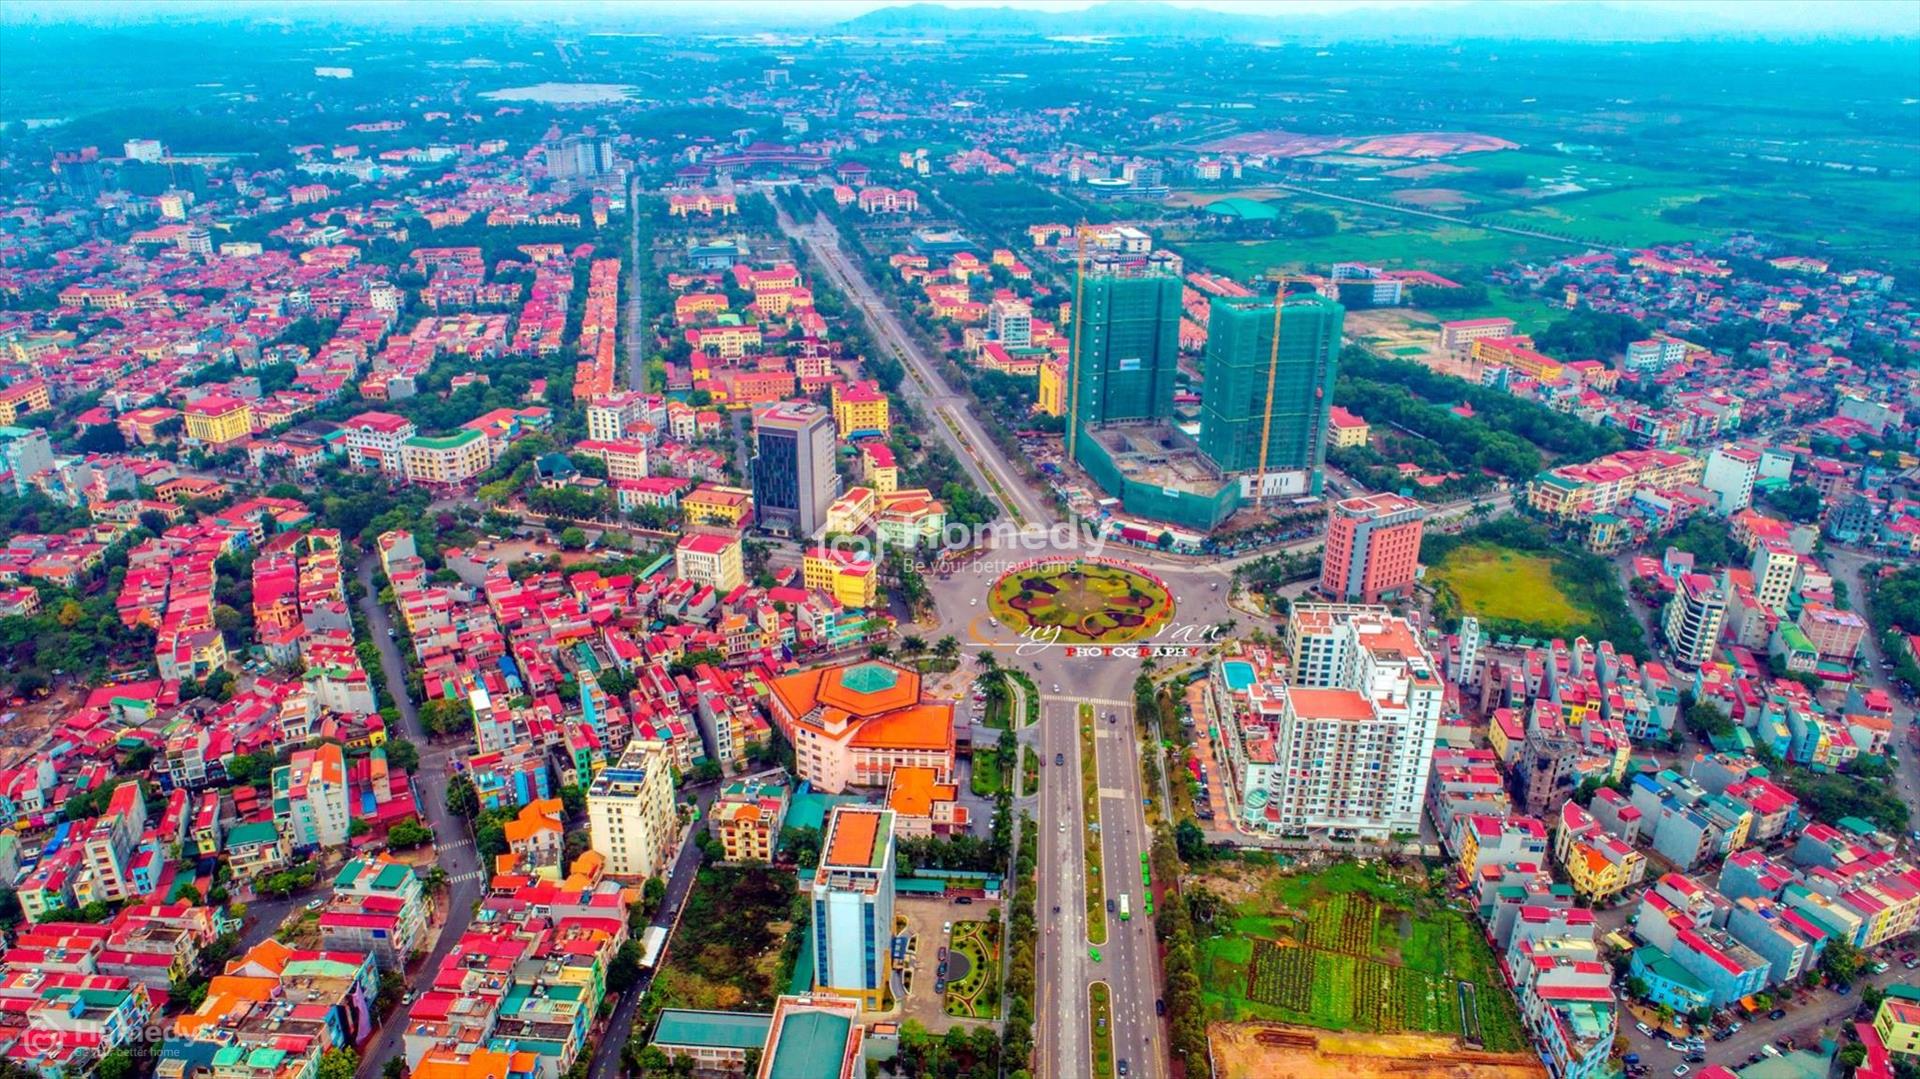 Cập nhật bảng giá đất Bắc Ninh mới nhất theo giai đoạn 2021-2024